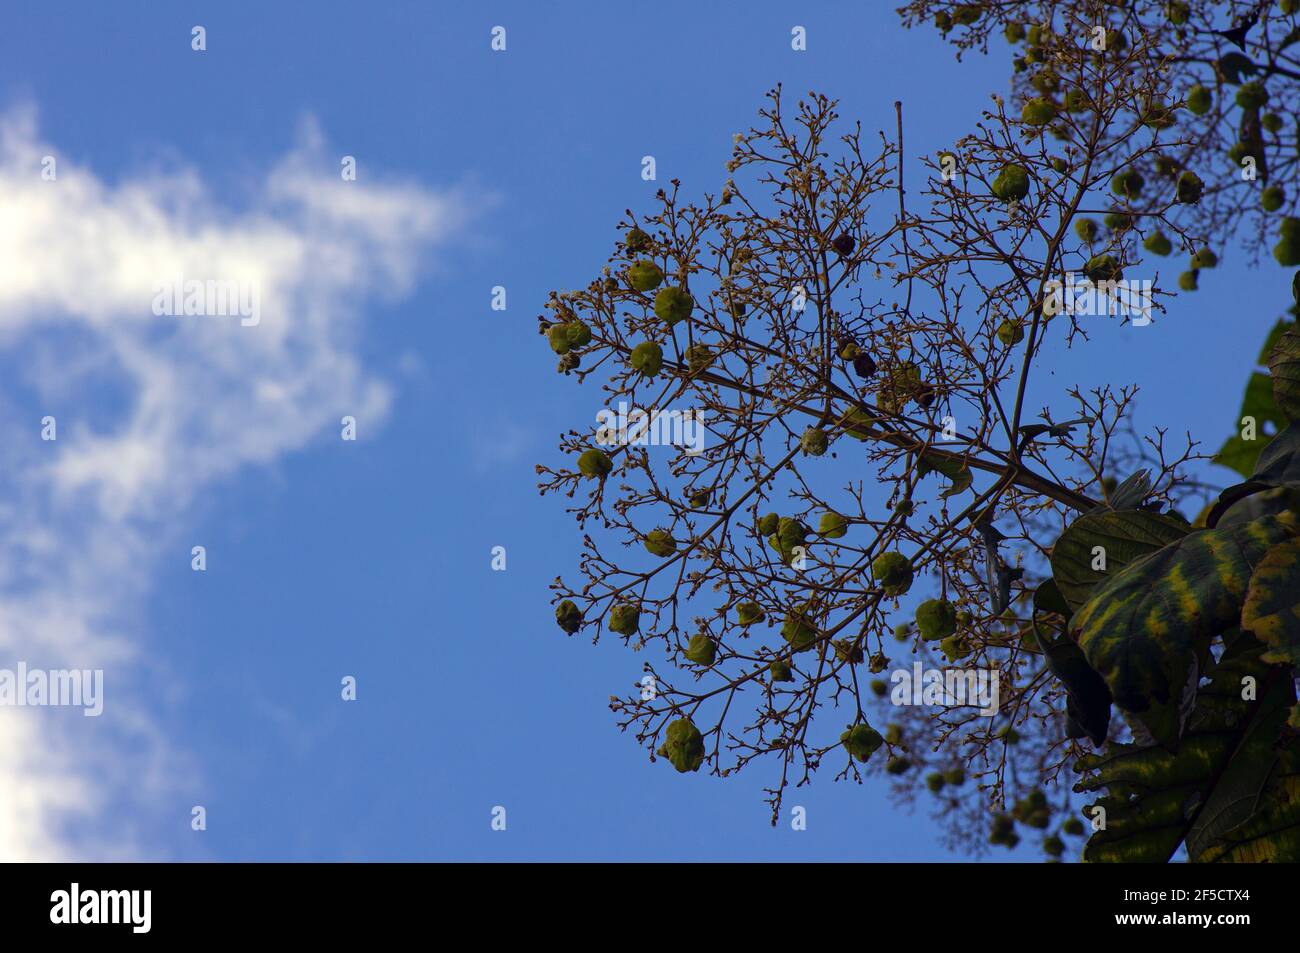 Die duftenden Teakblumen (Tectona grandis) blühen, in dichten Clustern am Ende der Zweige angeordnet, mit blauem Himmel Hintergrund in Gunung Kidul, Stockfoto